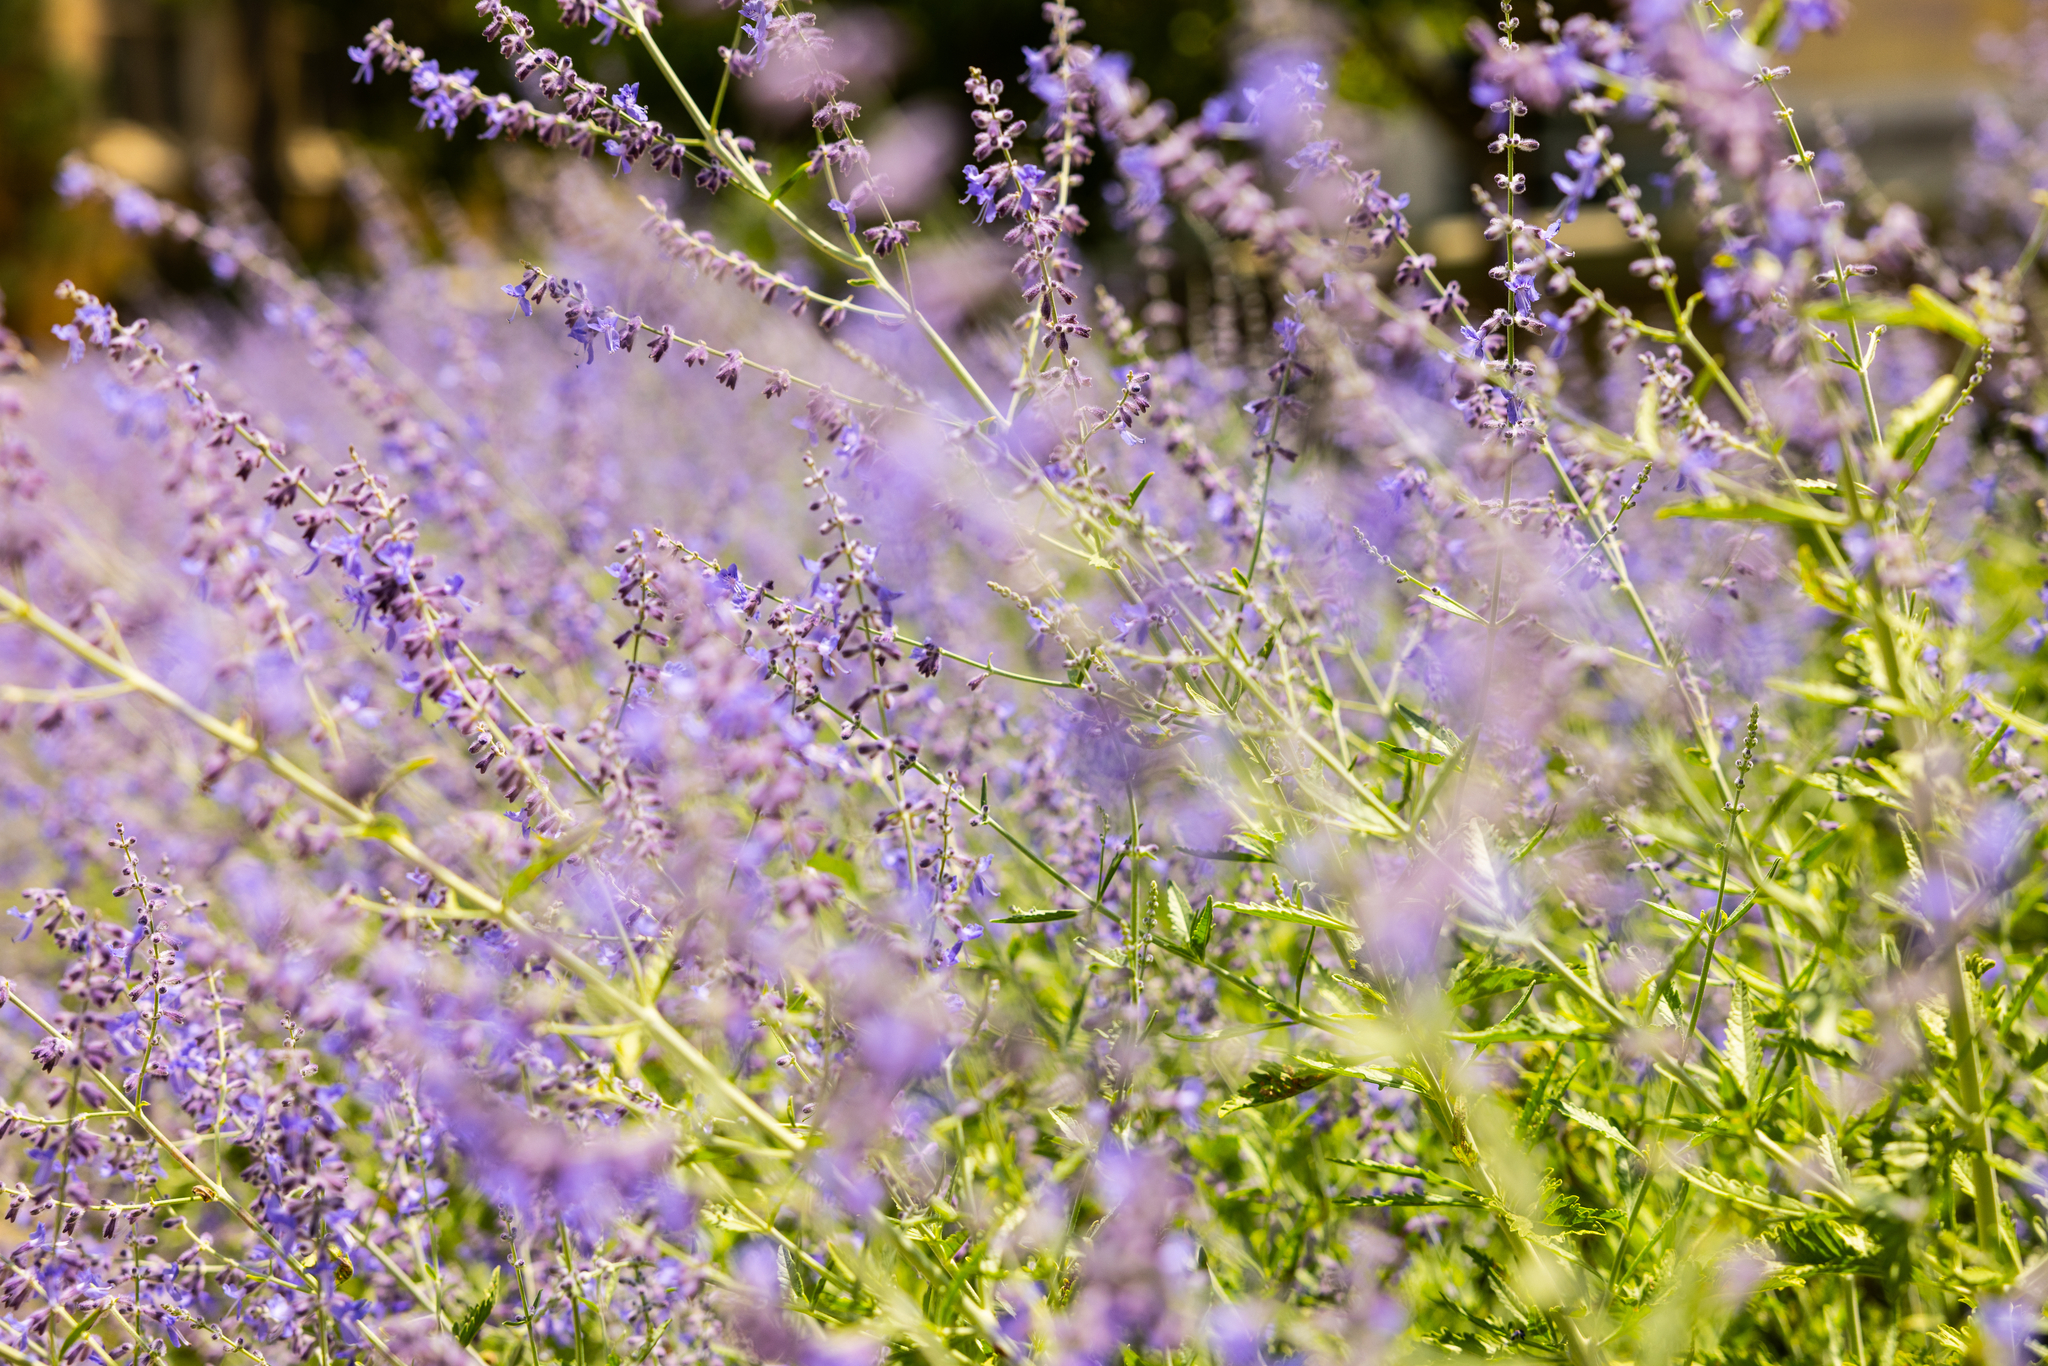 Purple flowers blowing in the breeze